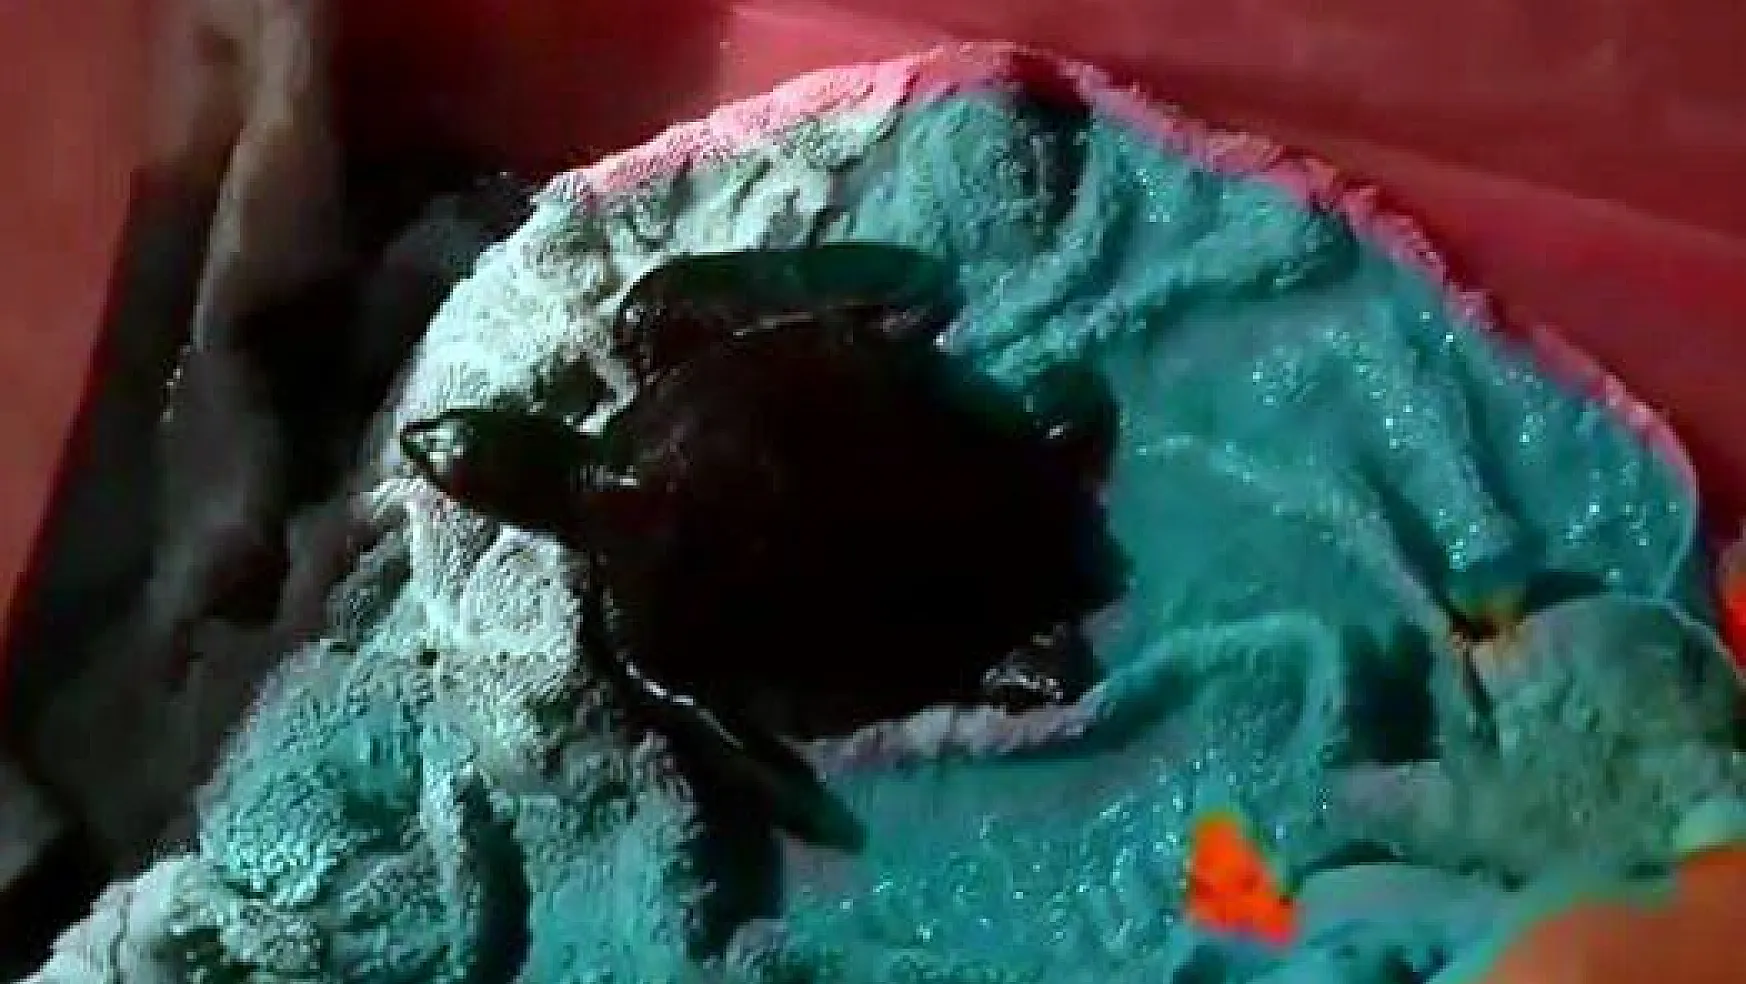 Zifte bulanan yavru deniz kaplumbağası tedavi altına alındı